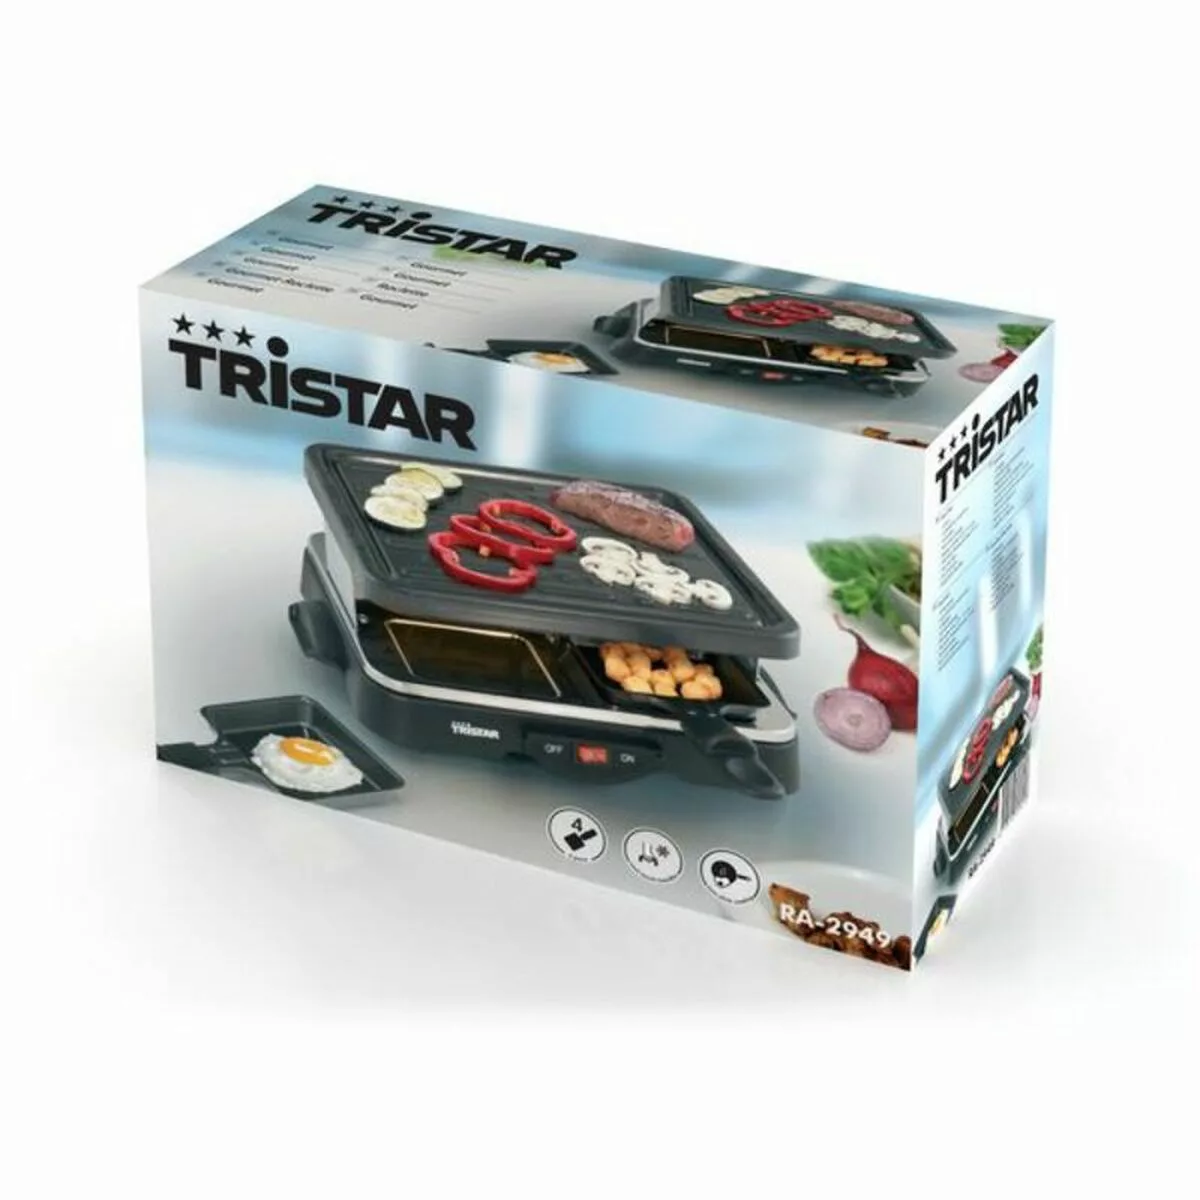 Grillpfanne Tristar Schwarz 500 W günstig online kaufen